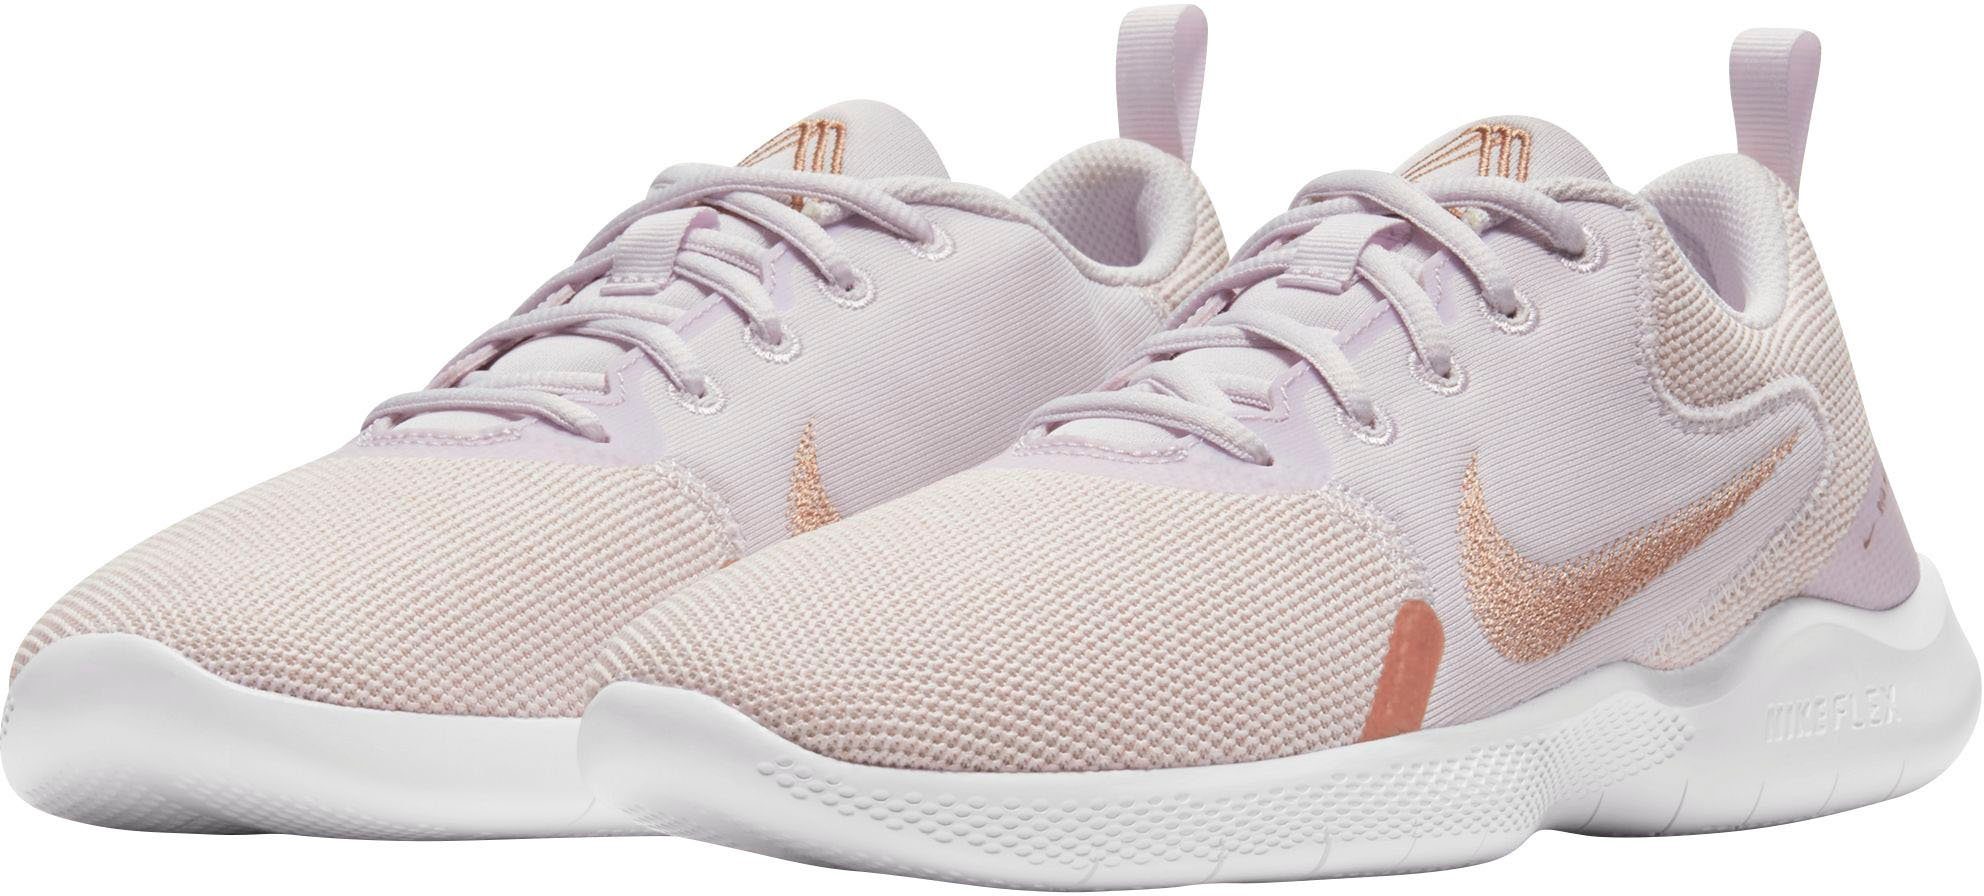 Nike Damen Mesh Schuhe online kaufen | OTTO